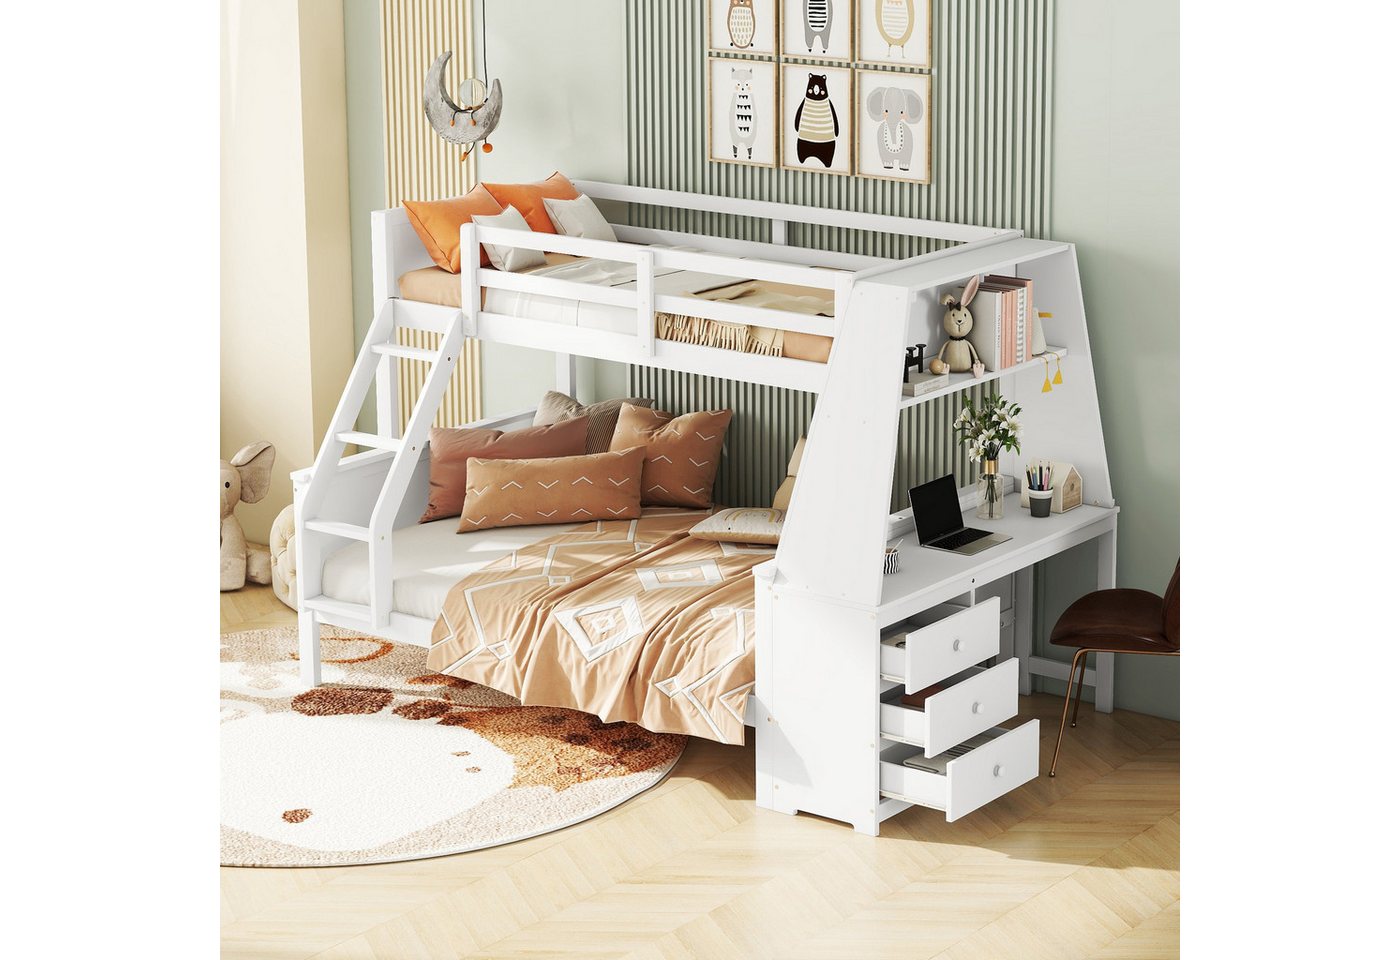 MODFU Etagenbett ausgestattet mit Tisch, großer Stauraum, hohes Geländer (Kinderbett 90*200cm140*200cm), ohne Matratze von MODFU